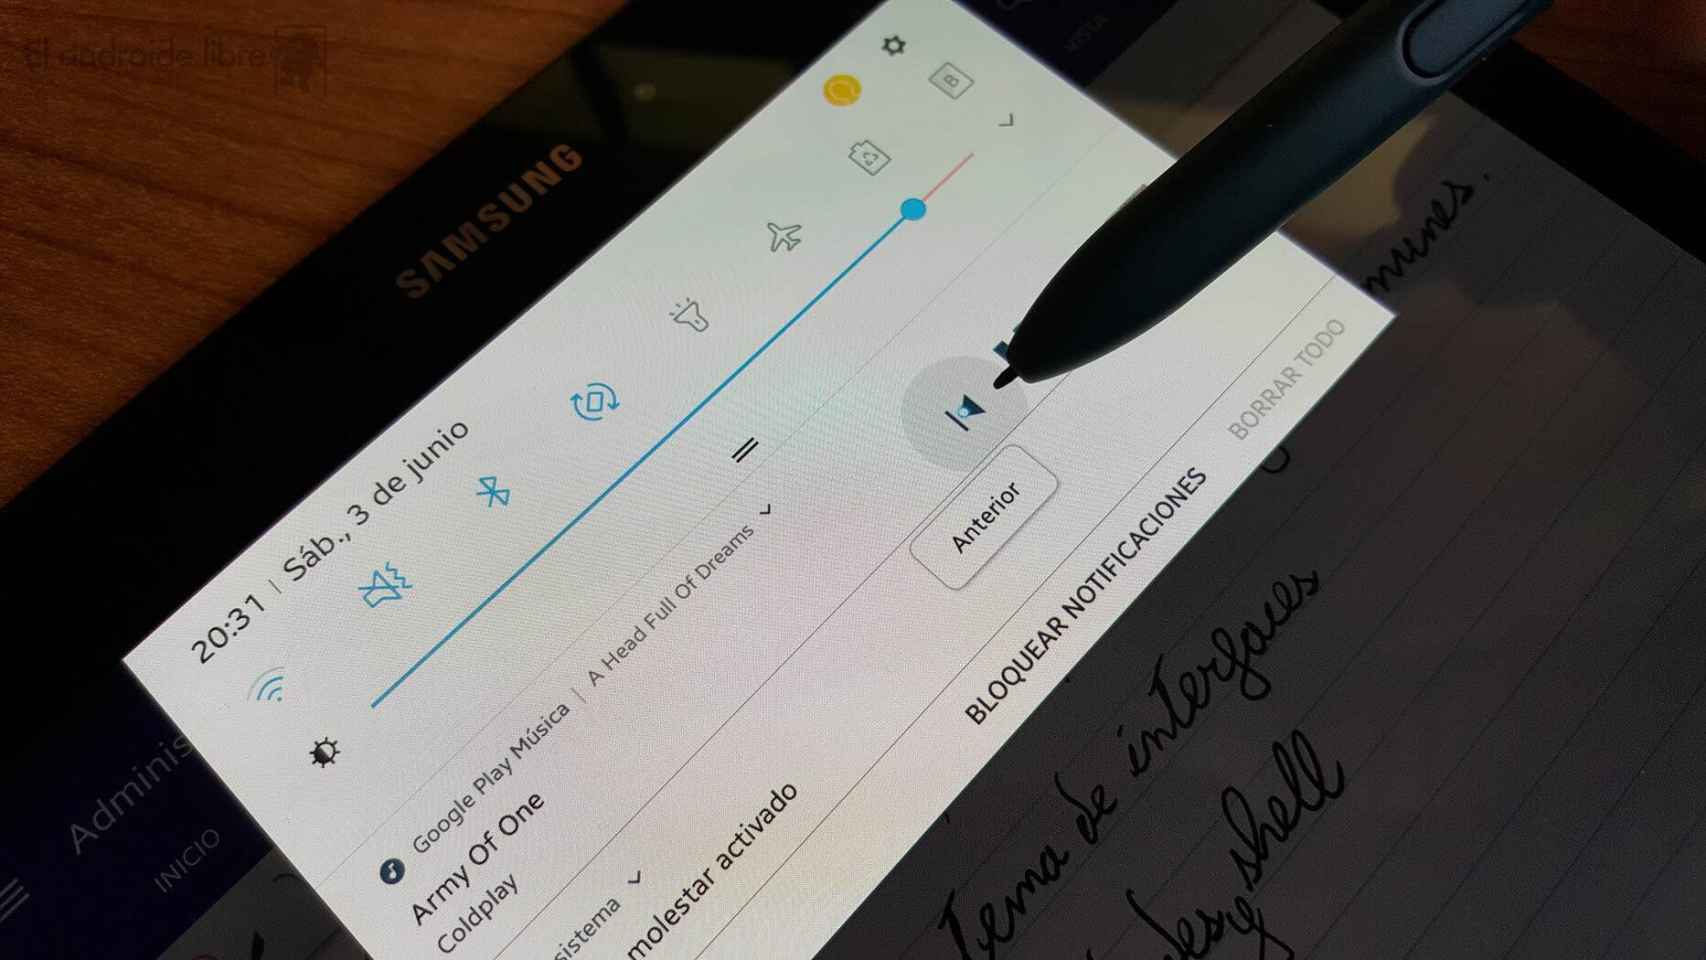 La Samsung Galaxy Tab S4 aparece en su primera imagen filtrada